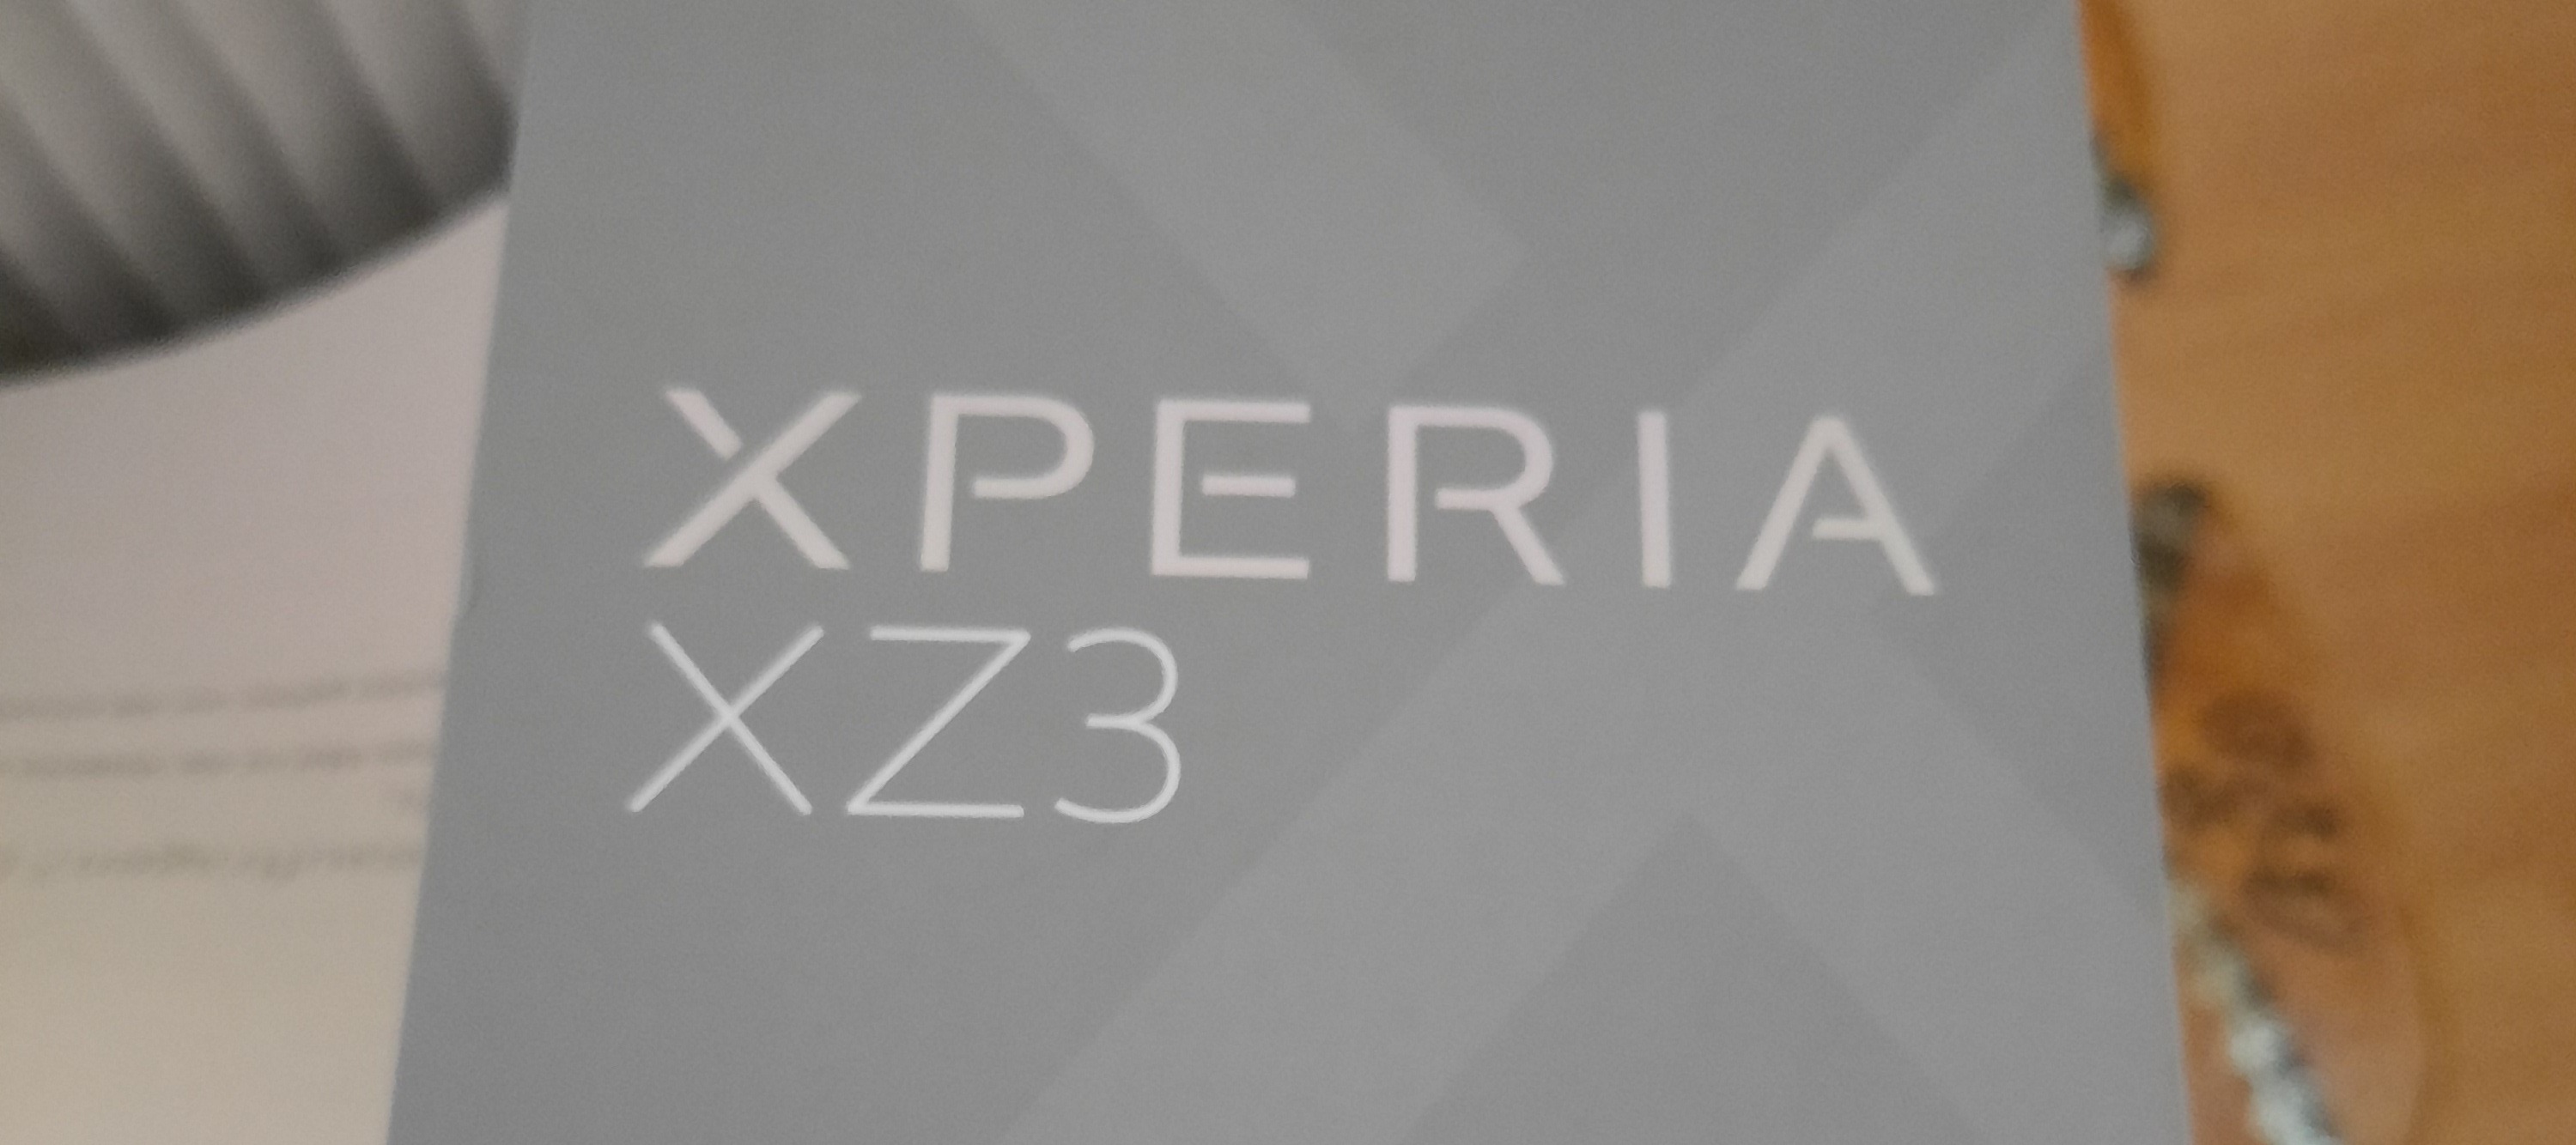 Sony Xperia XZ3, mein erstes Sony im Test